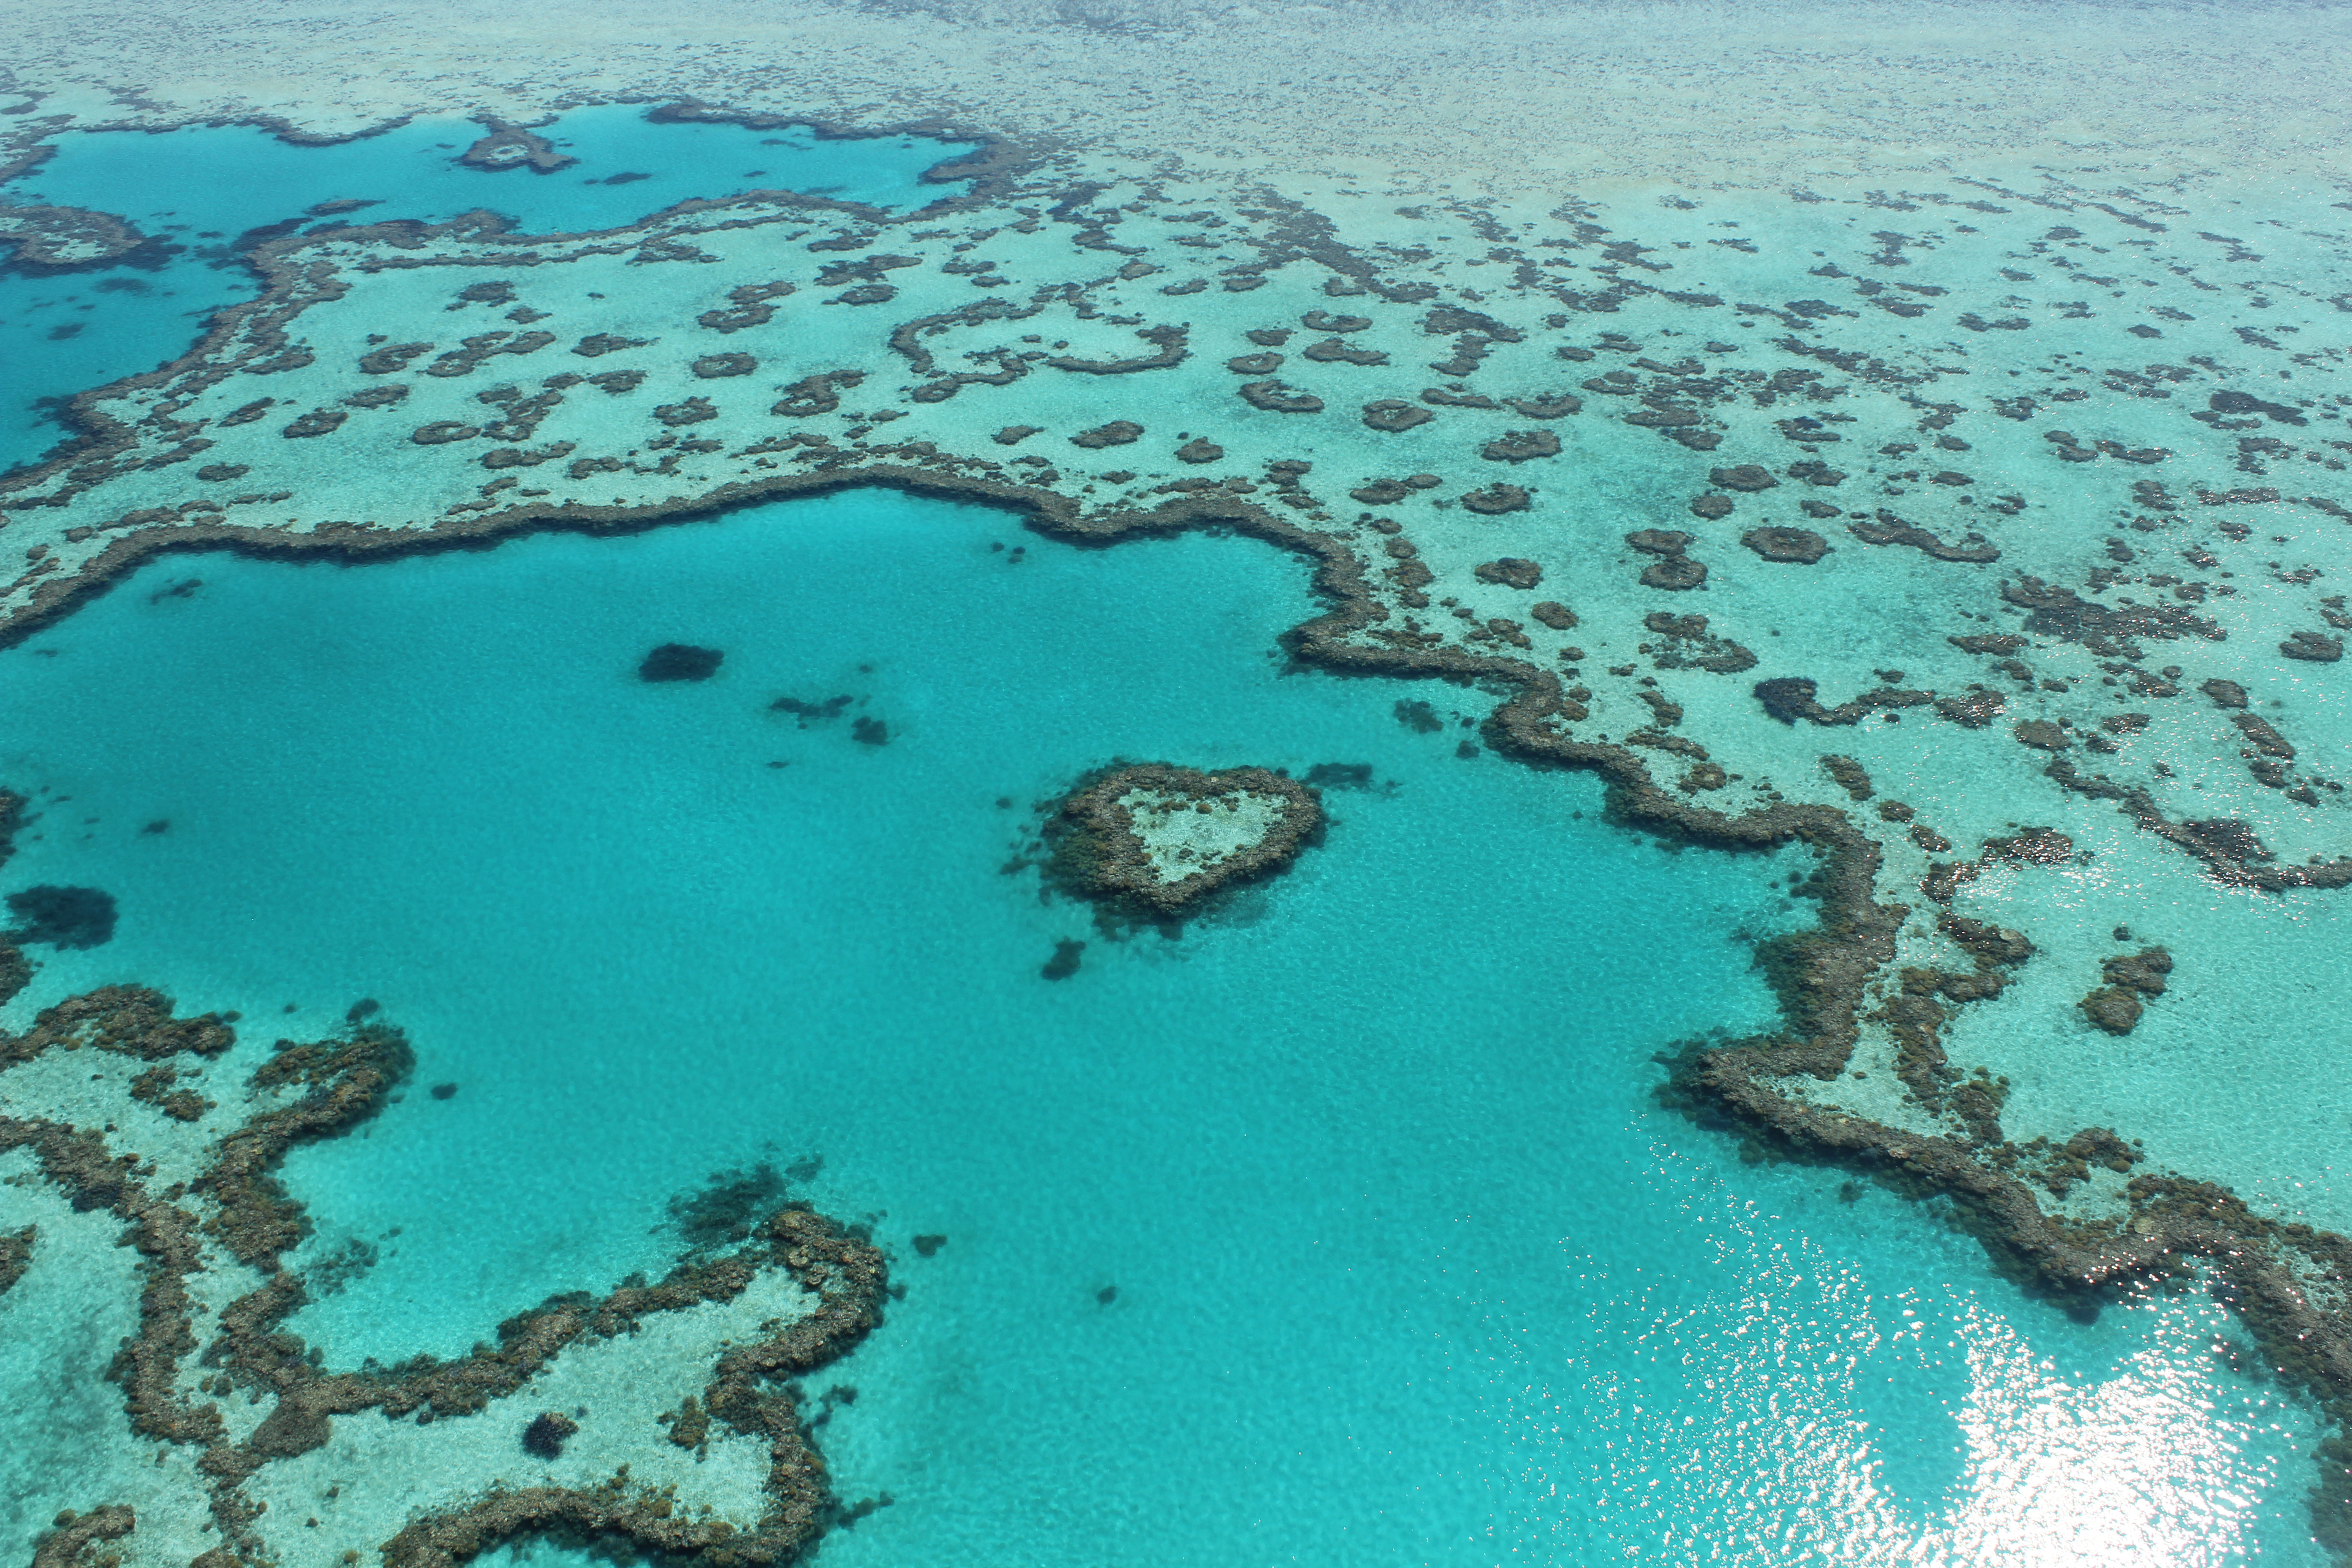 Heart Reef, Great Barrier Reef